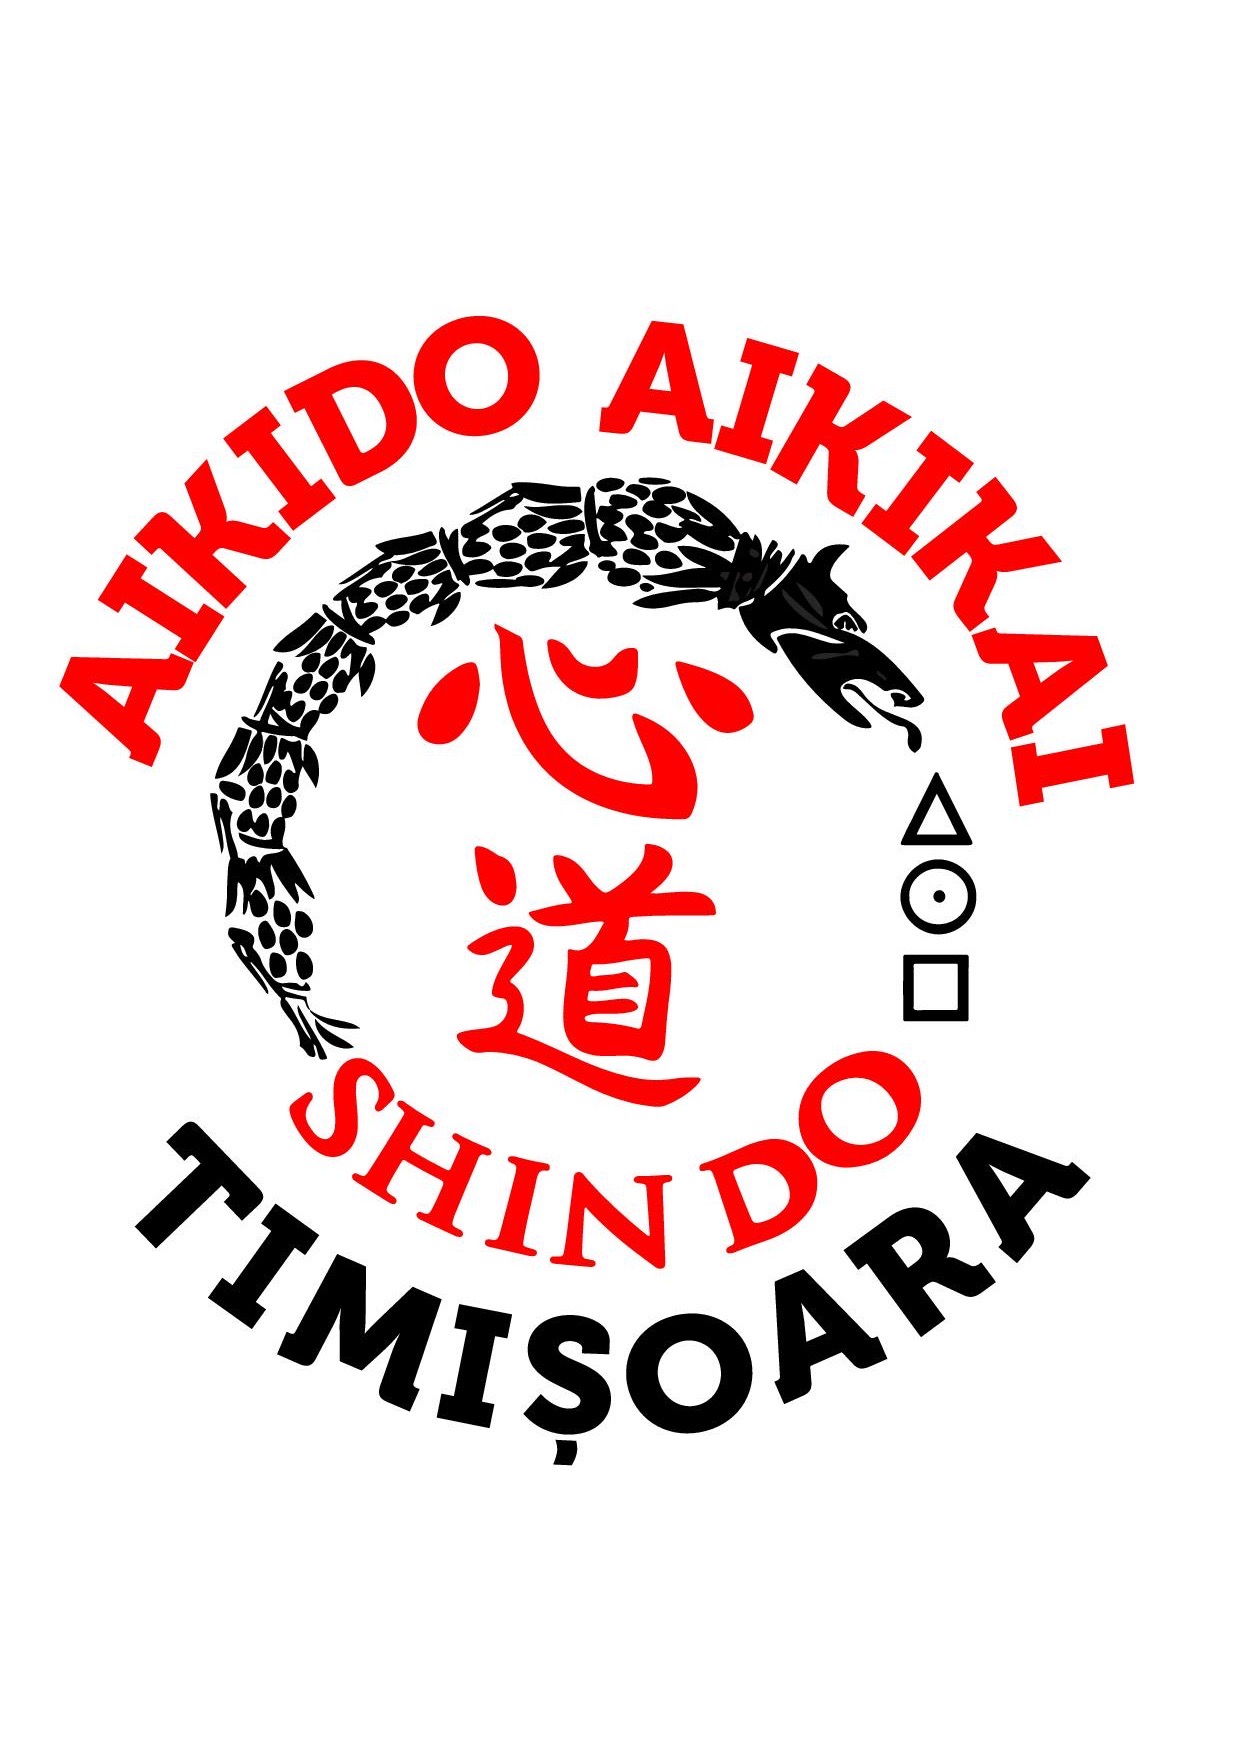 A.C.S. SHIN DO TIMIȘOARA logo